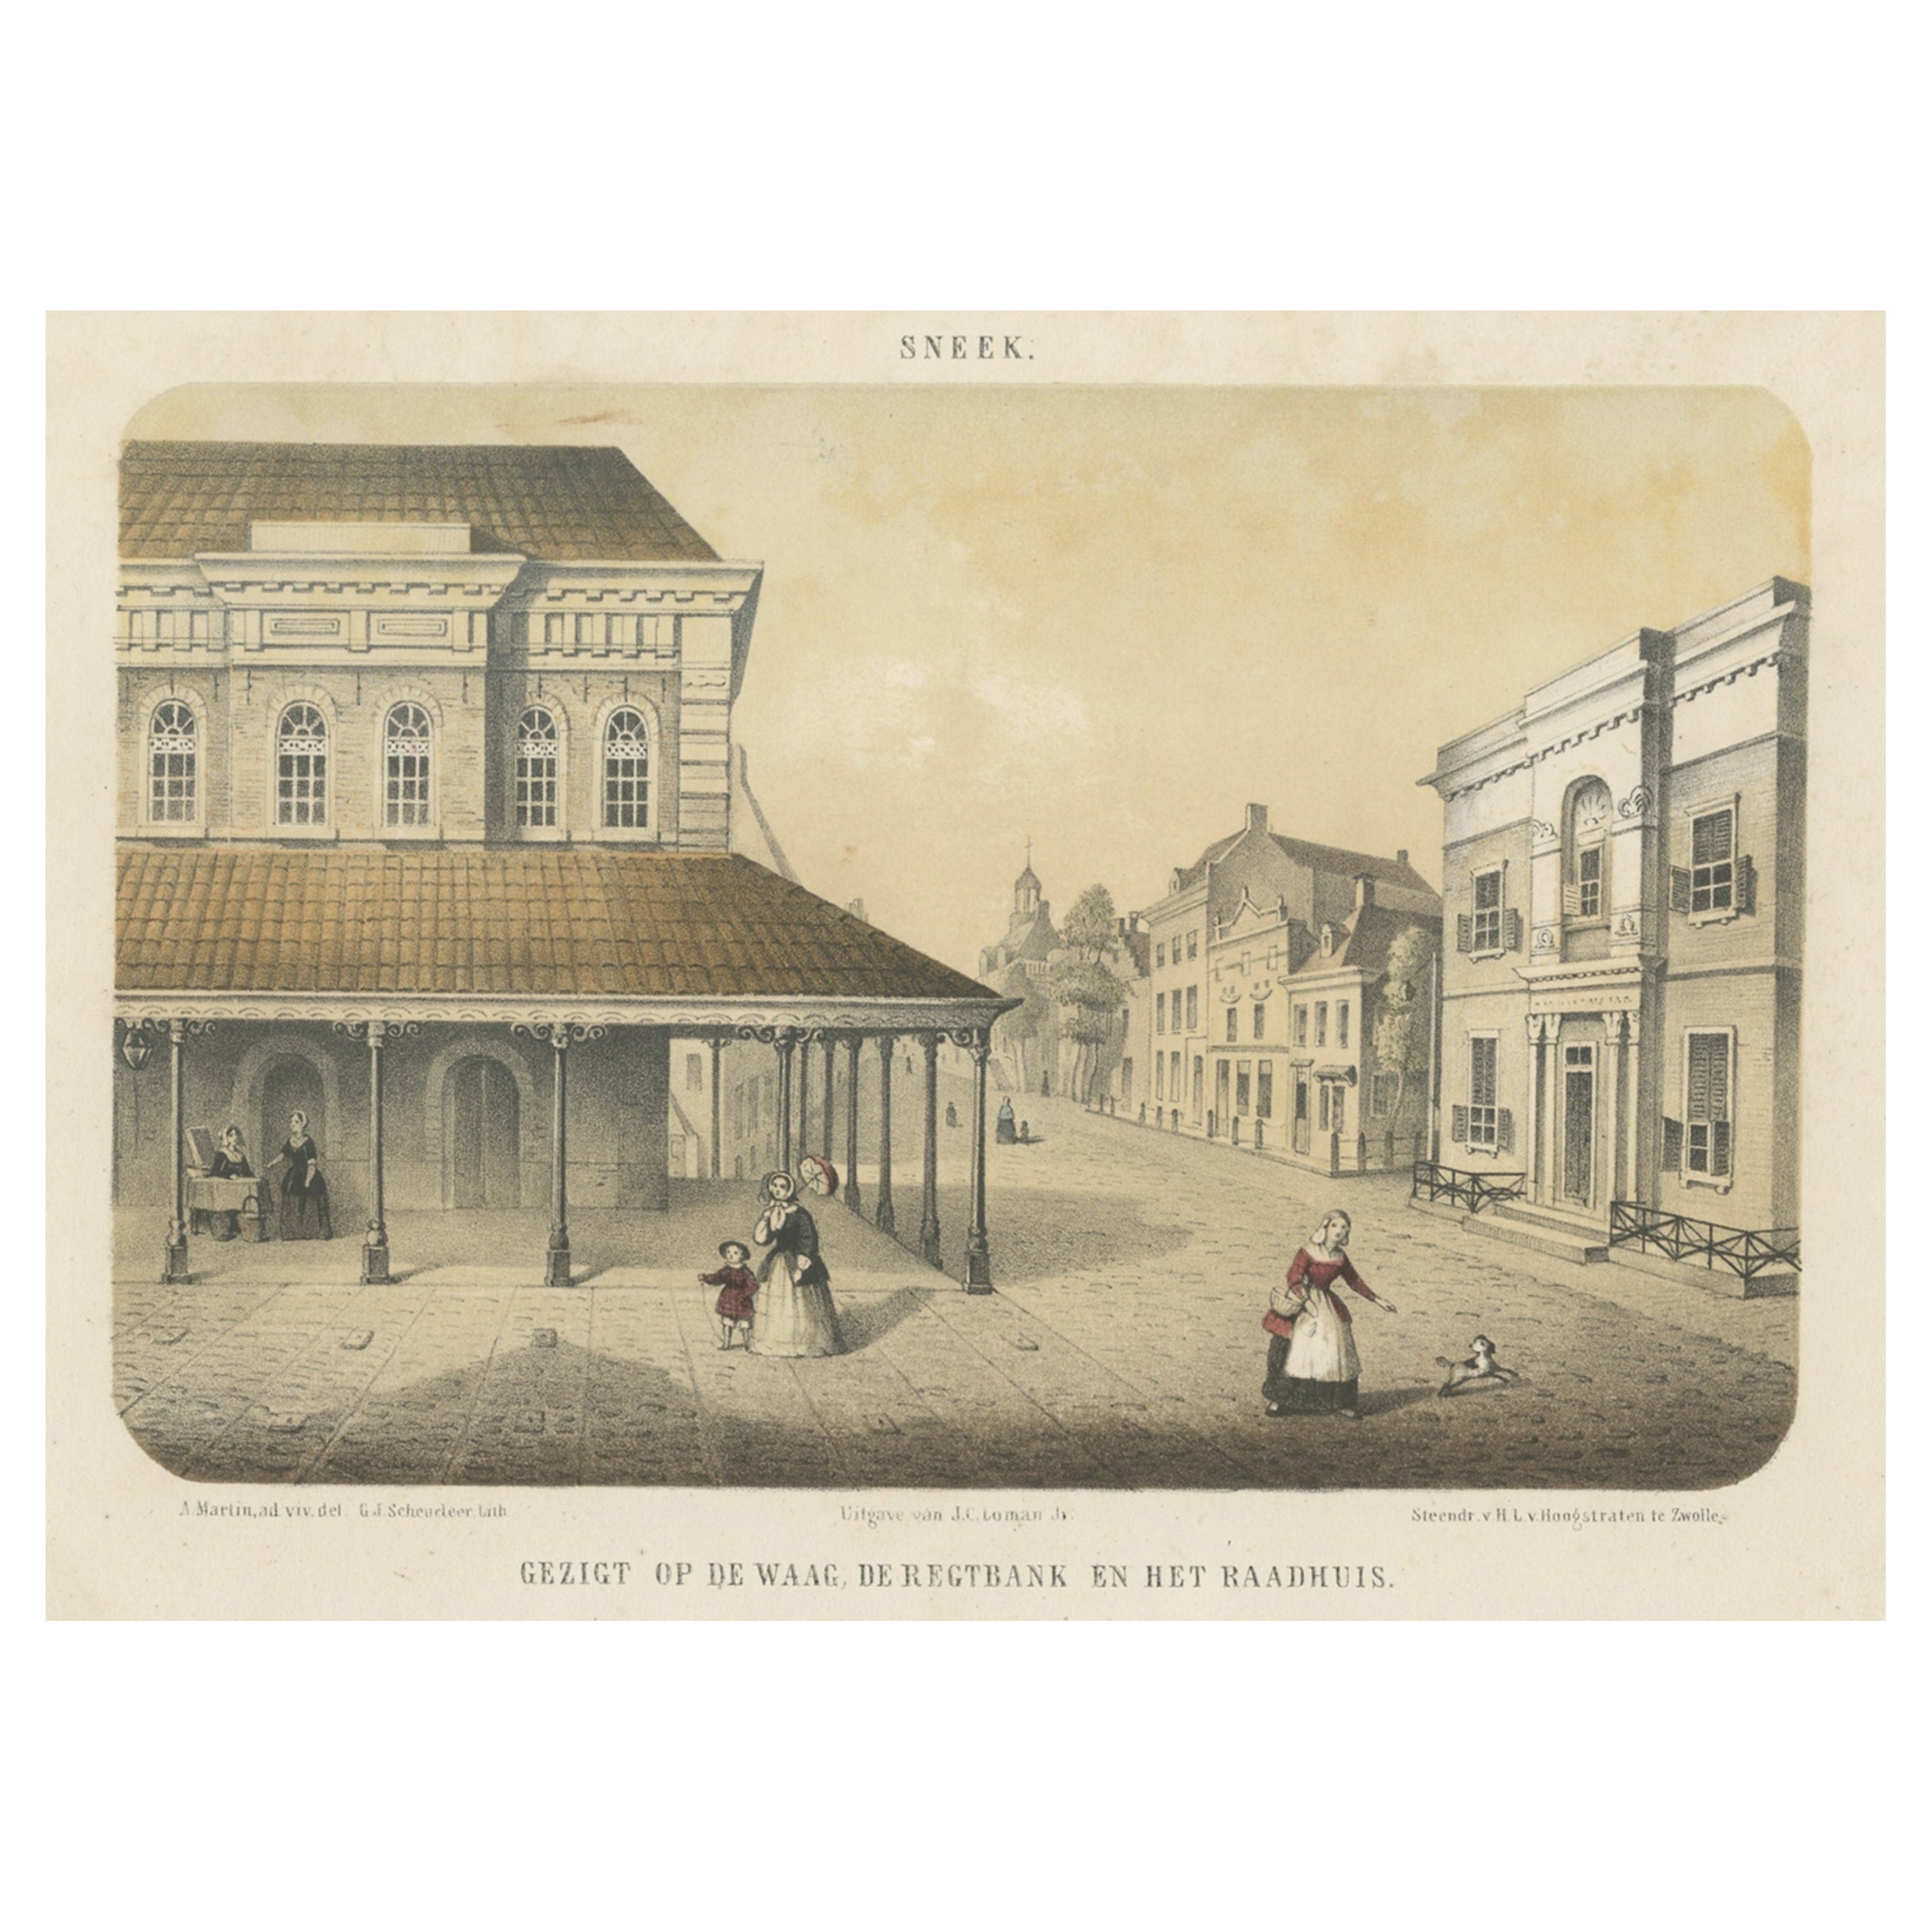 Impression ancienne de la ville frisoise de Sneek, Pays-Bas, vers 1860